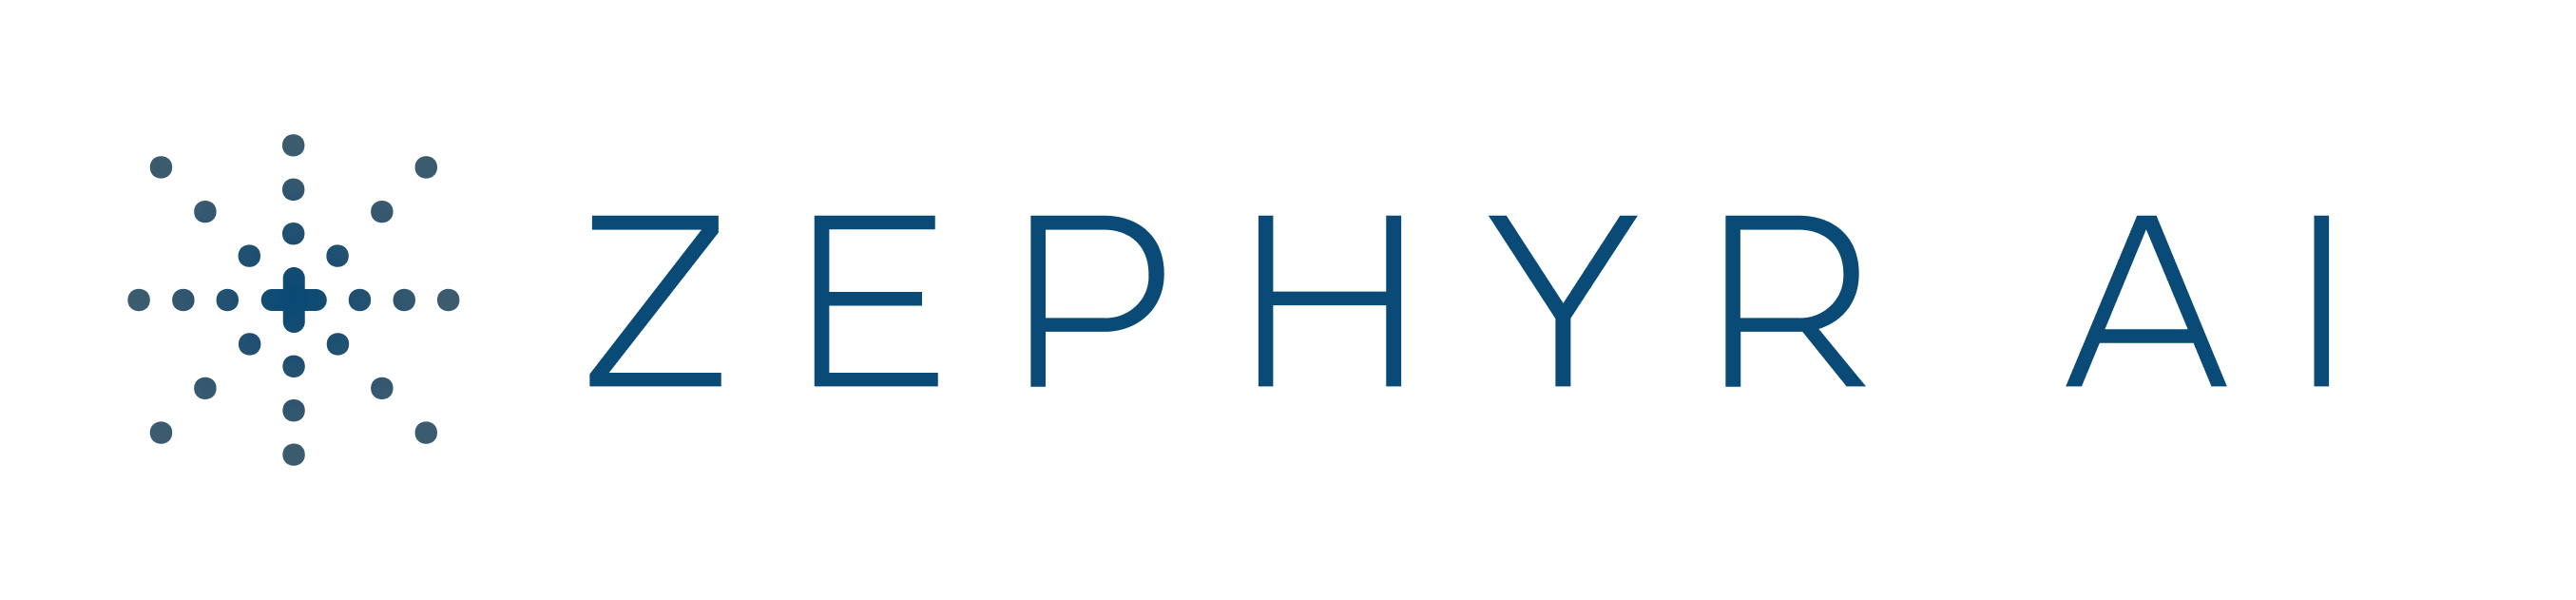 The Zephyr AI logo